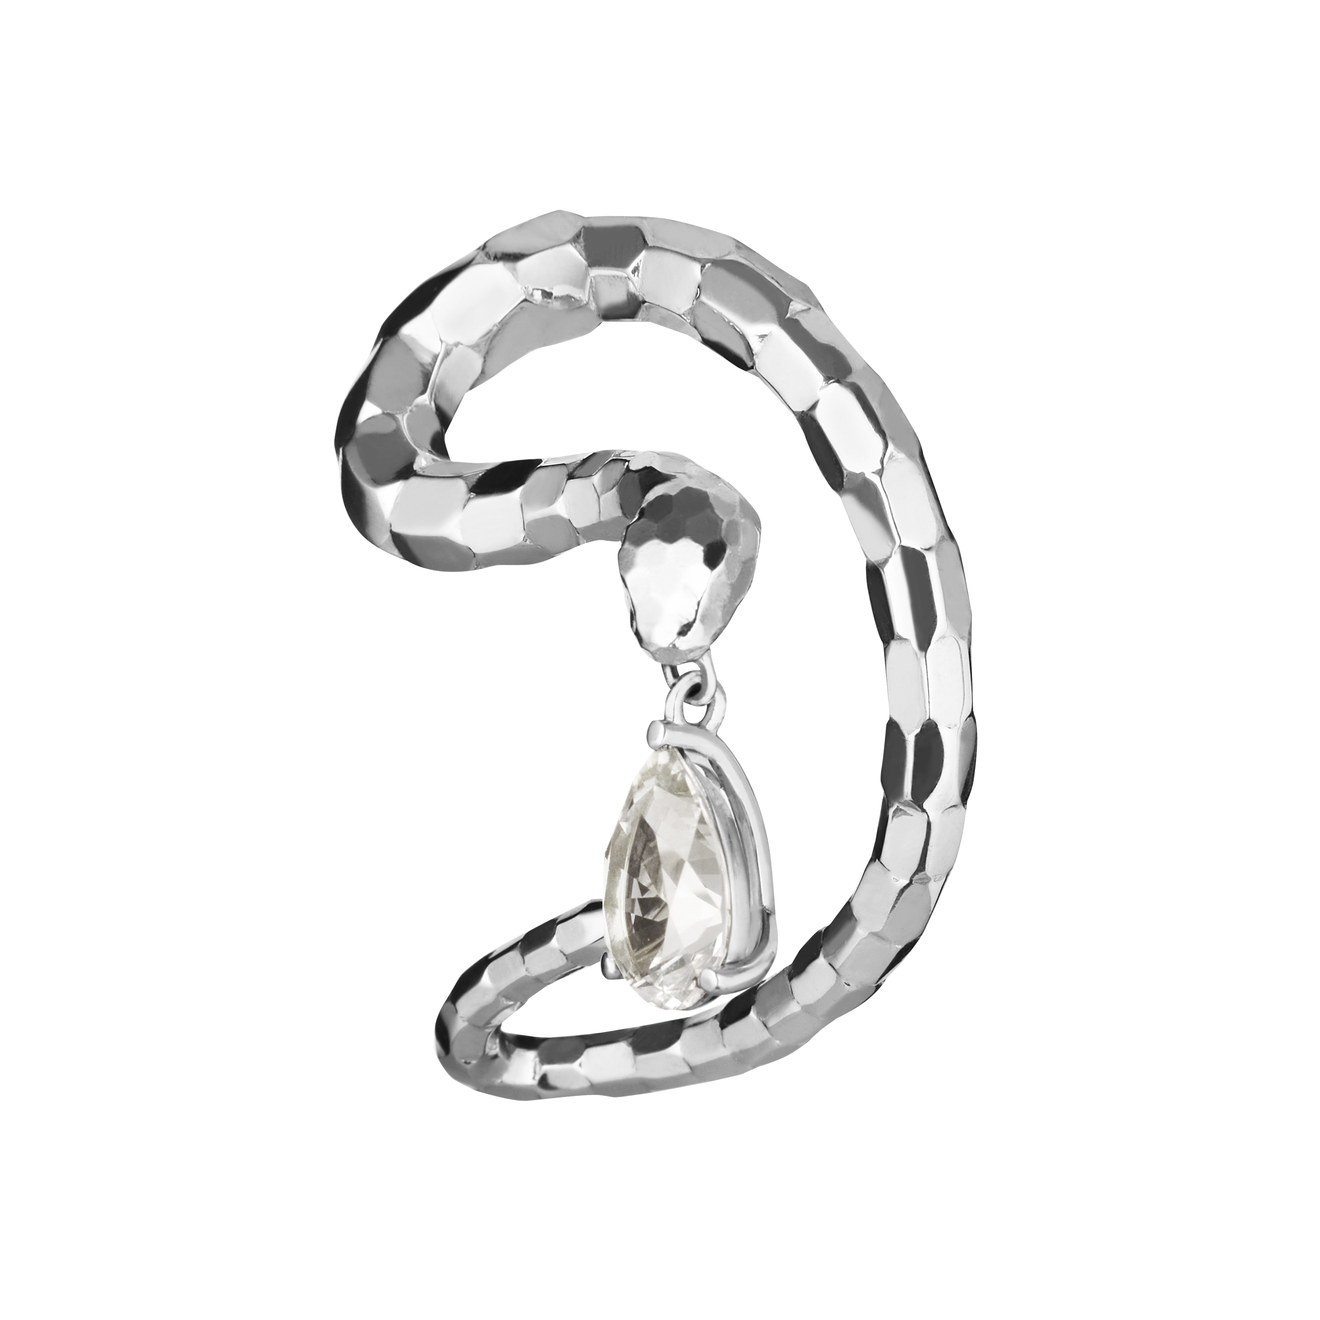 Vertigo Jewellery Lab Кафф-змея VENENUM из серебра vertigo jewellery lab подвеска cleoptr из серебра